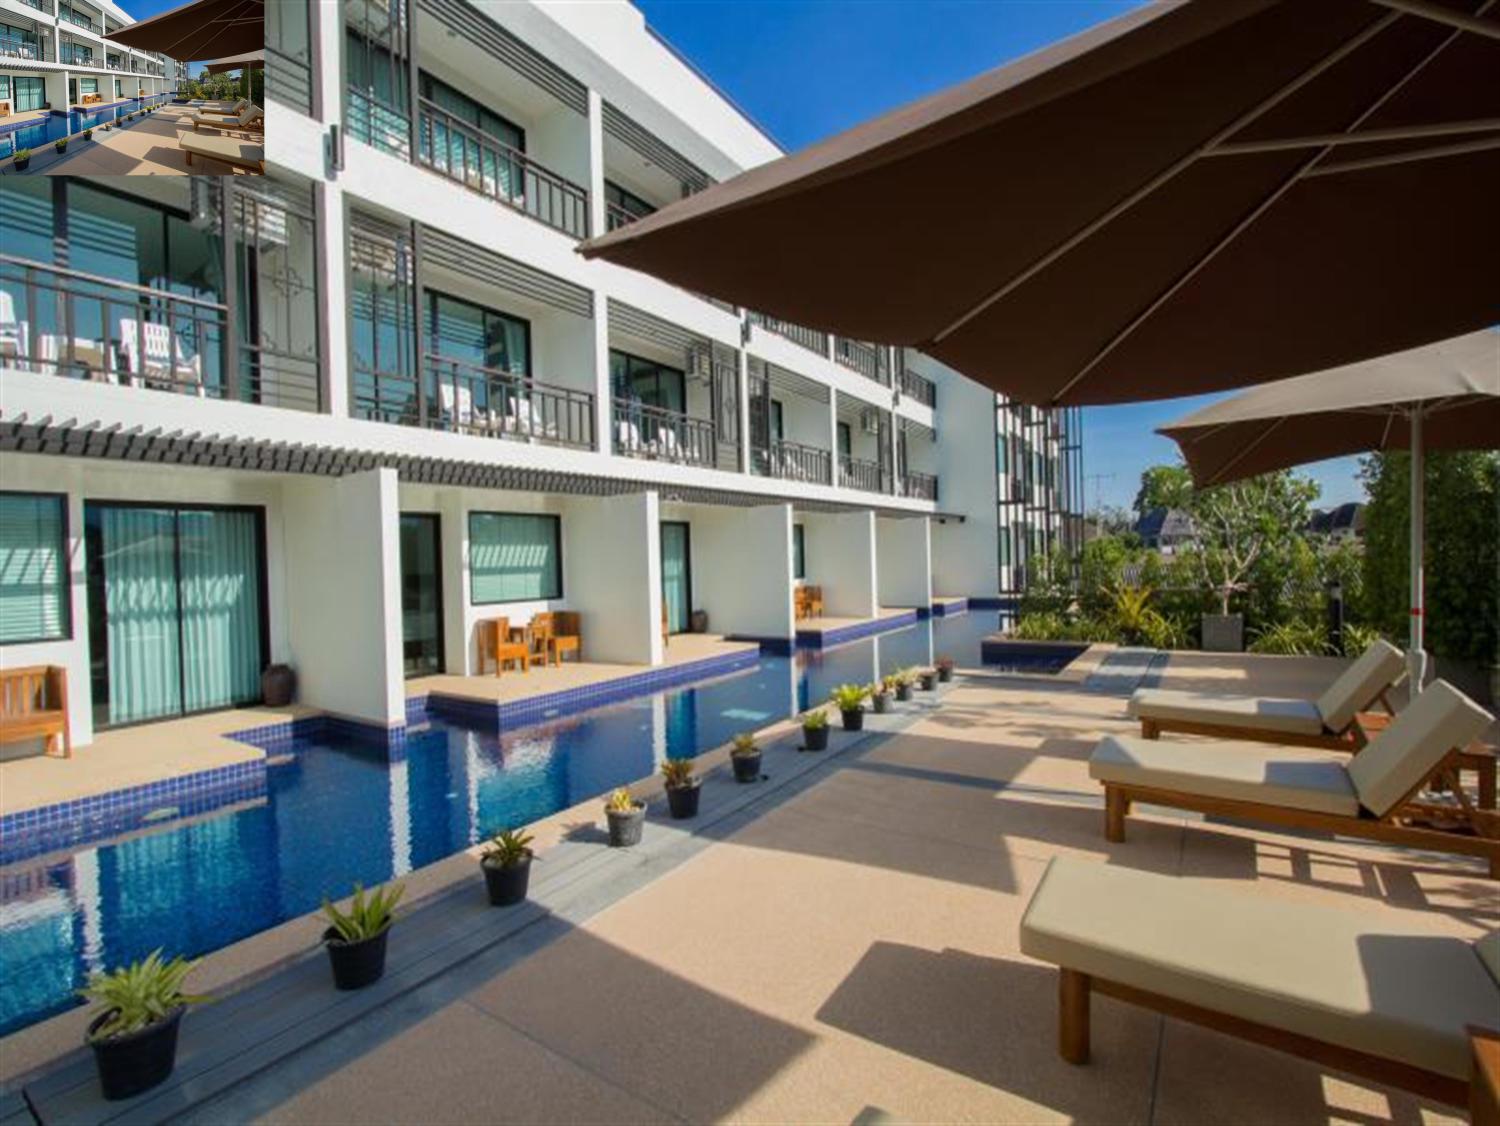 Baba House Phuket Hotel - Image 3